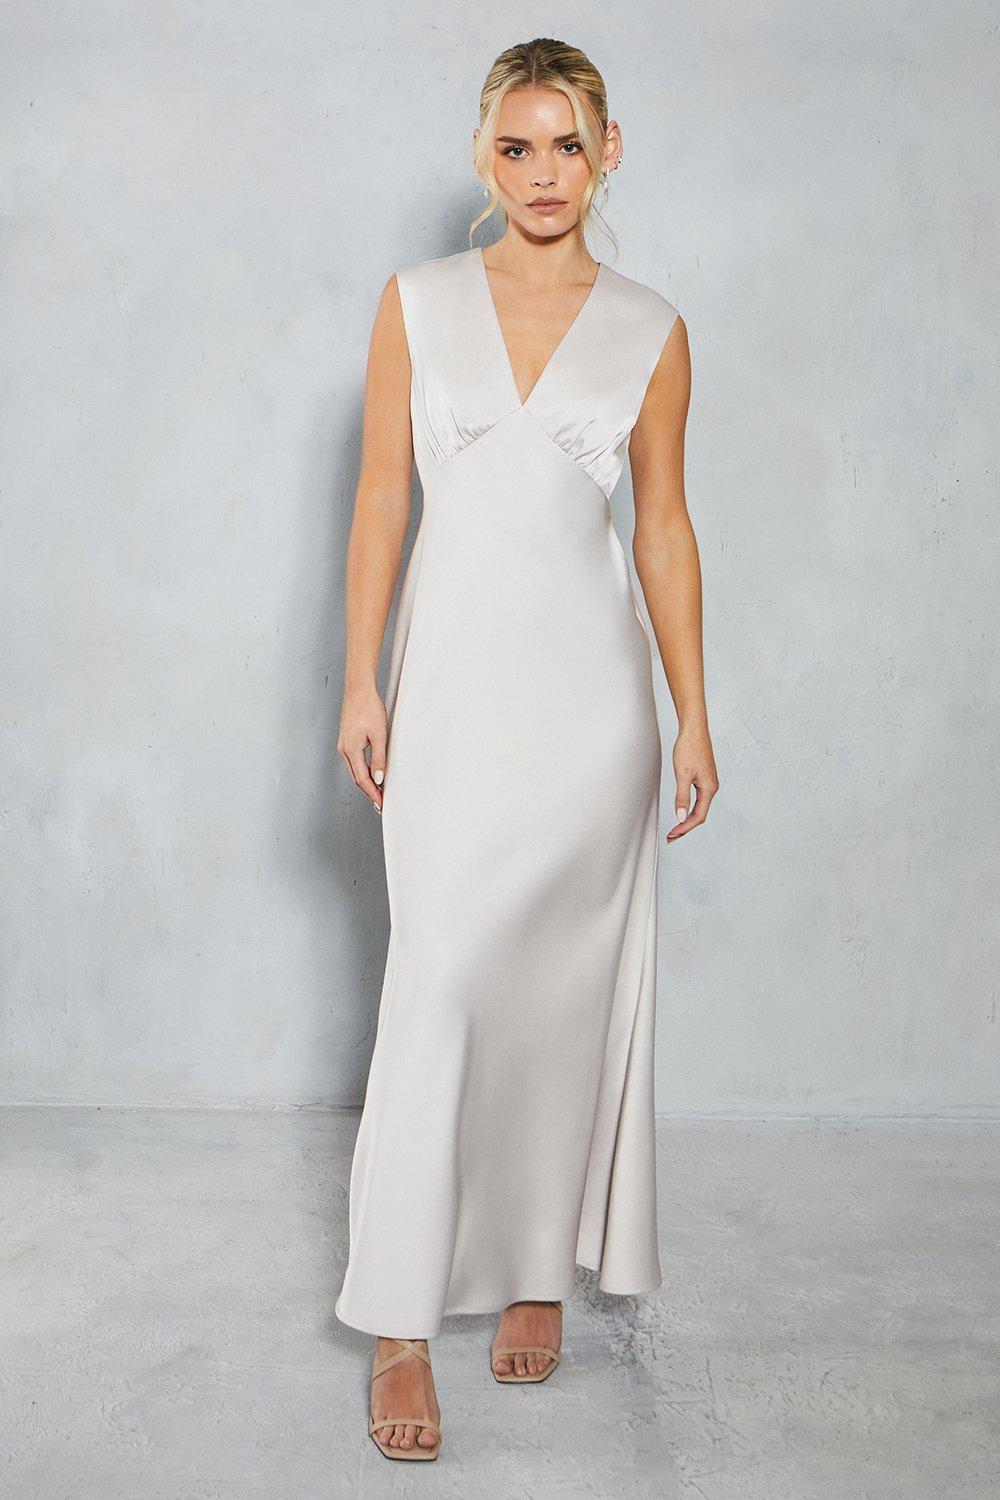 Миниатюрное атласное платье макси с открытой спиной для подружек невесты Oasis, серебро женское кружевное платье с открытой спиной белое длинное привлекательное платье невесты платье для матери невесты 2019